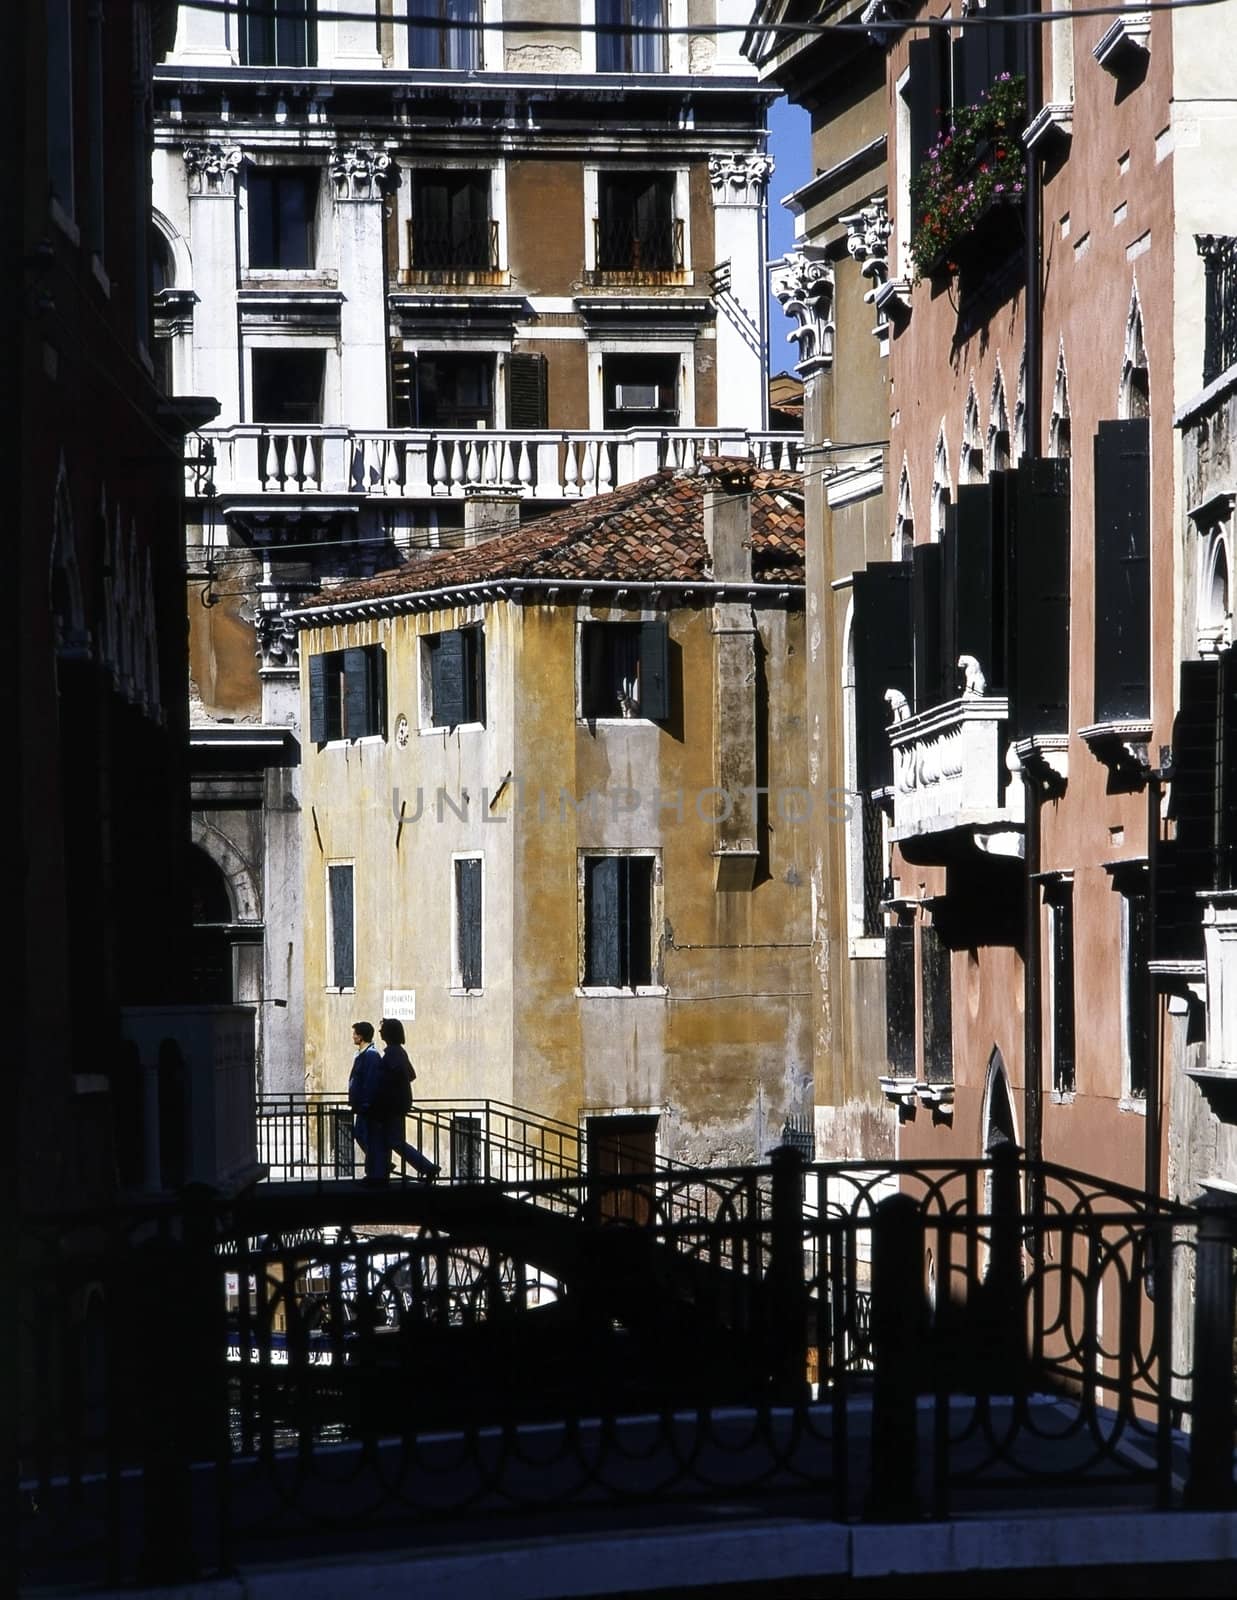 Venice, Italy by jol66